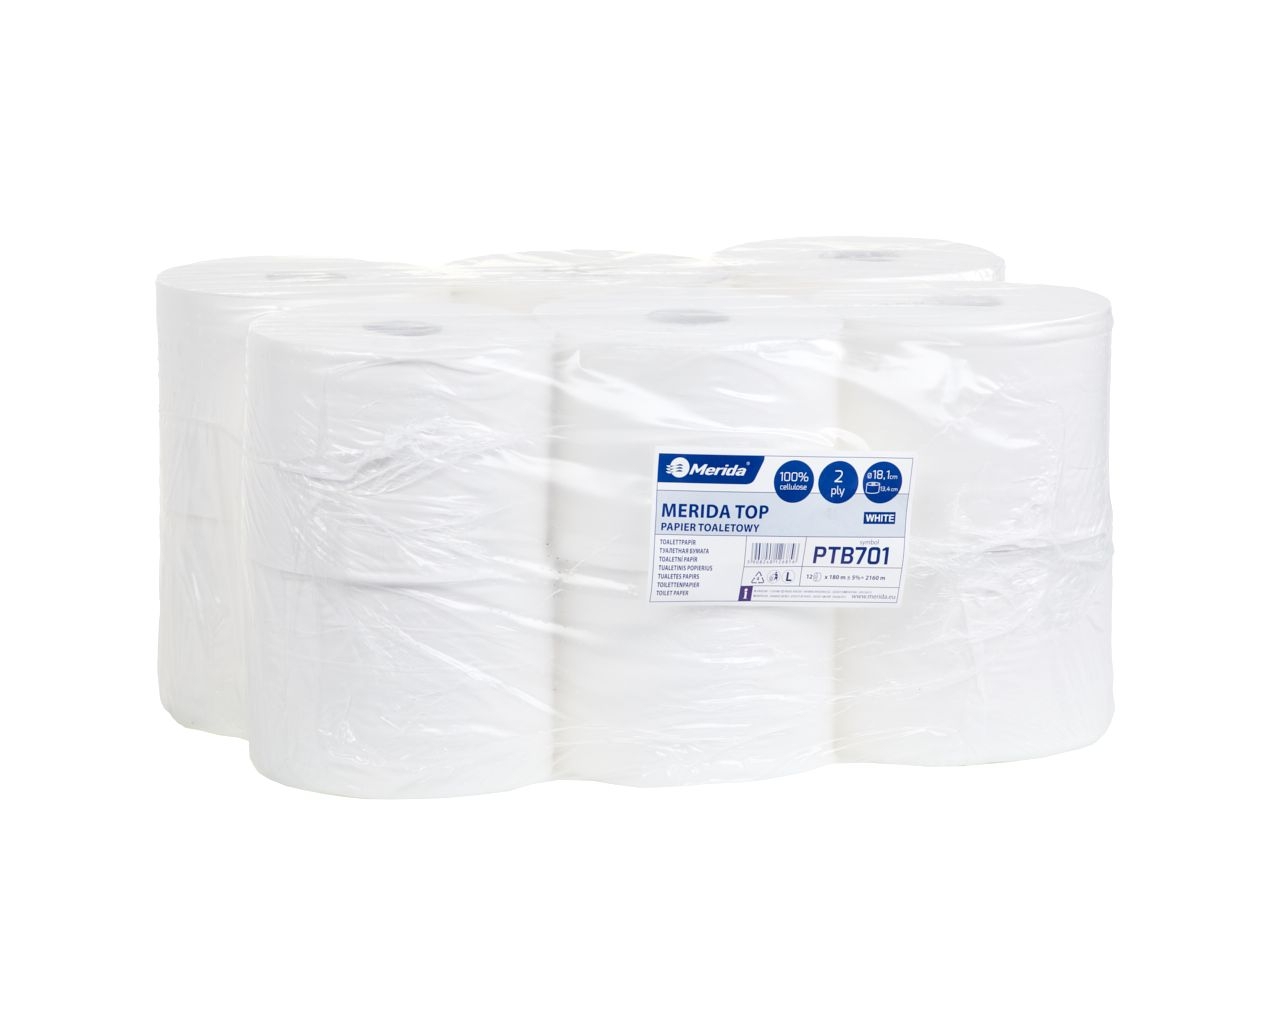 Papier toaletowy TOP, biały, średnica 18,1 cm, długość 180 m, dwuwarstwowy, opakowanie 12 sztukt.